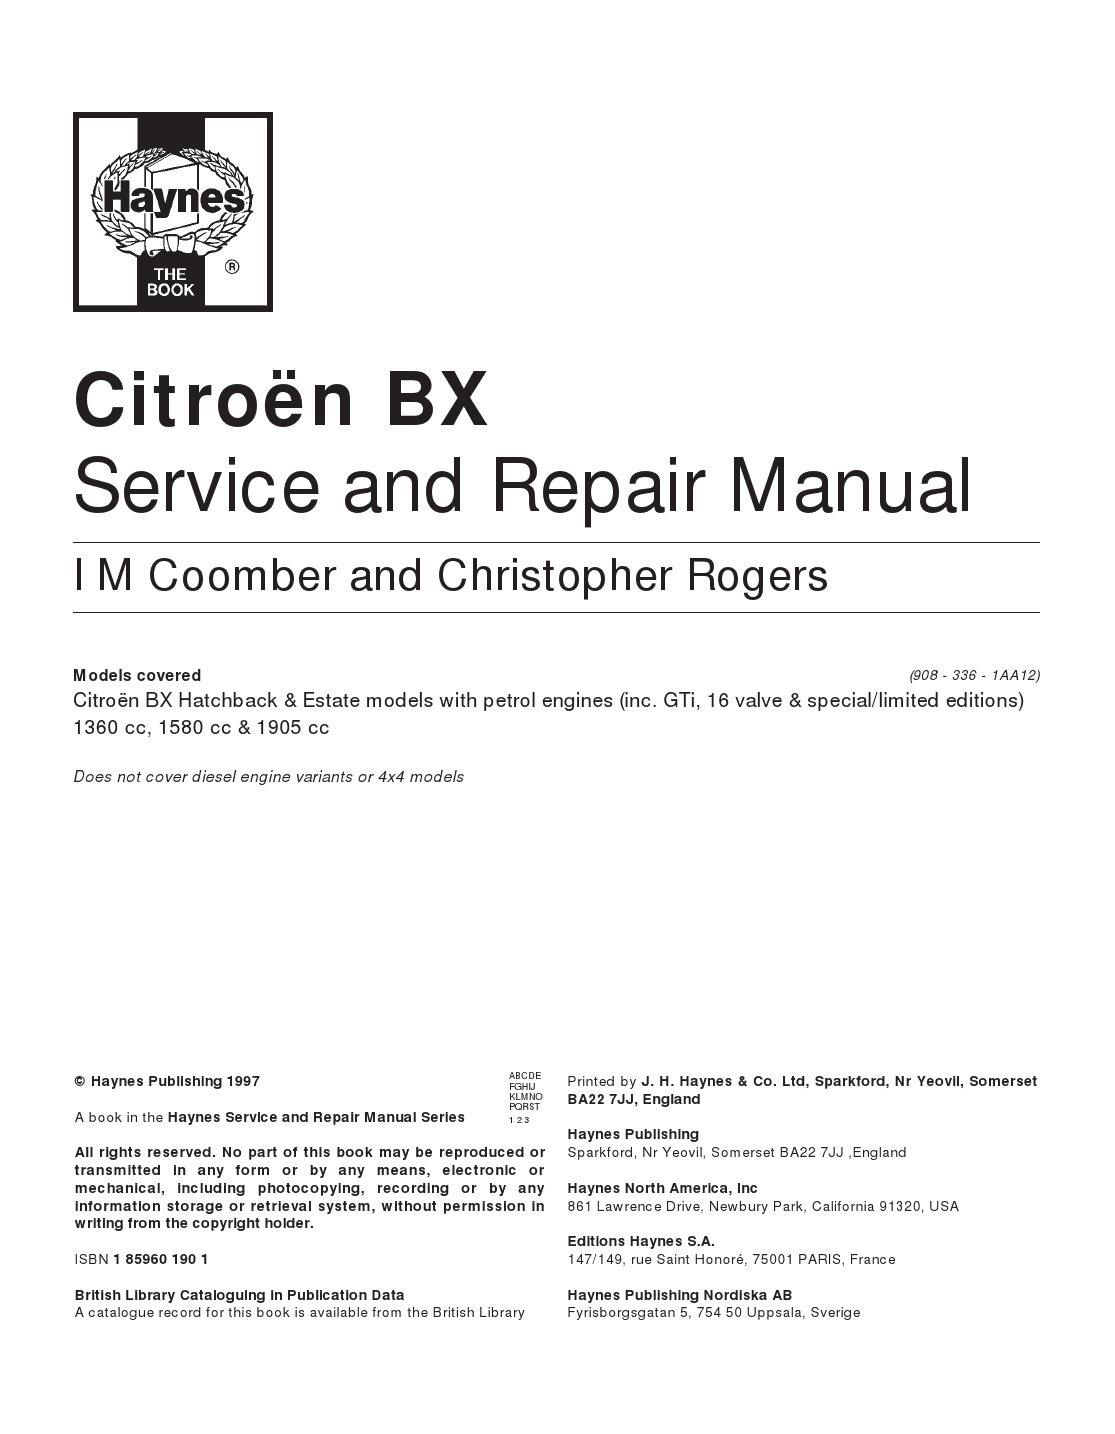 Citroen Manuals: Free Citroën BX Service and Repair Manual PDF